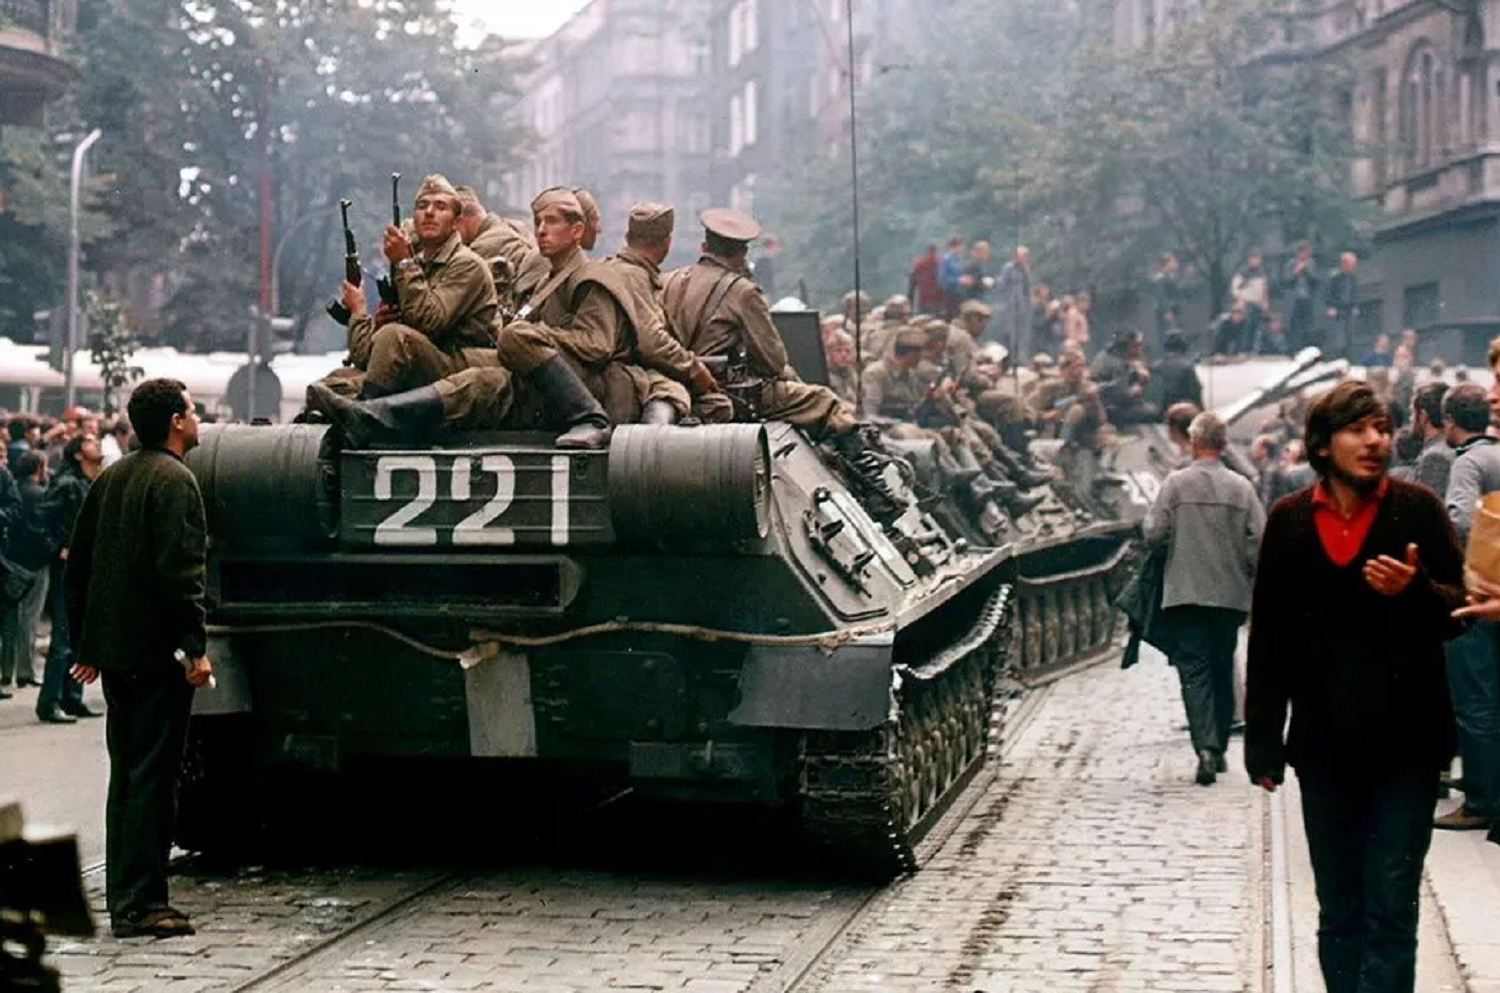 Купить в чехословакии. Операция Дунай 1968. Операция Дунай Прага 1968. Операция «Дунай». Чехословакия, 1968 год..